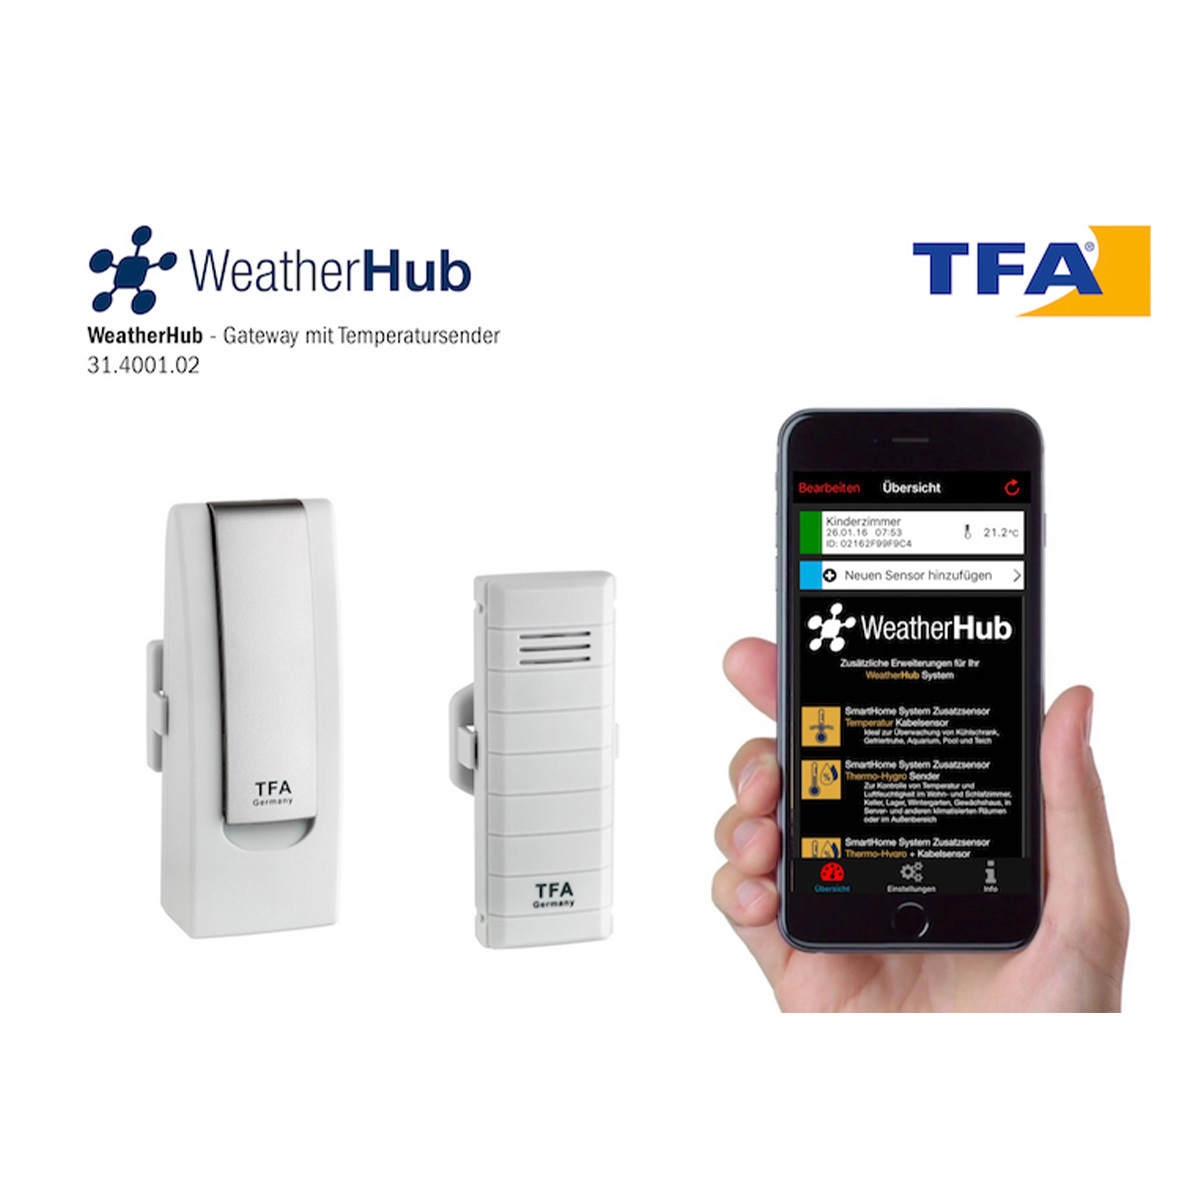 TFA weatherhub 50 Température Contrôle Contrôle alimentaire émetteurs radio app 